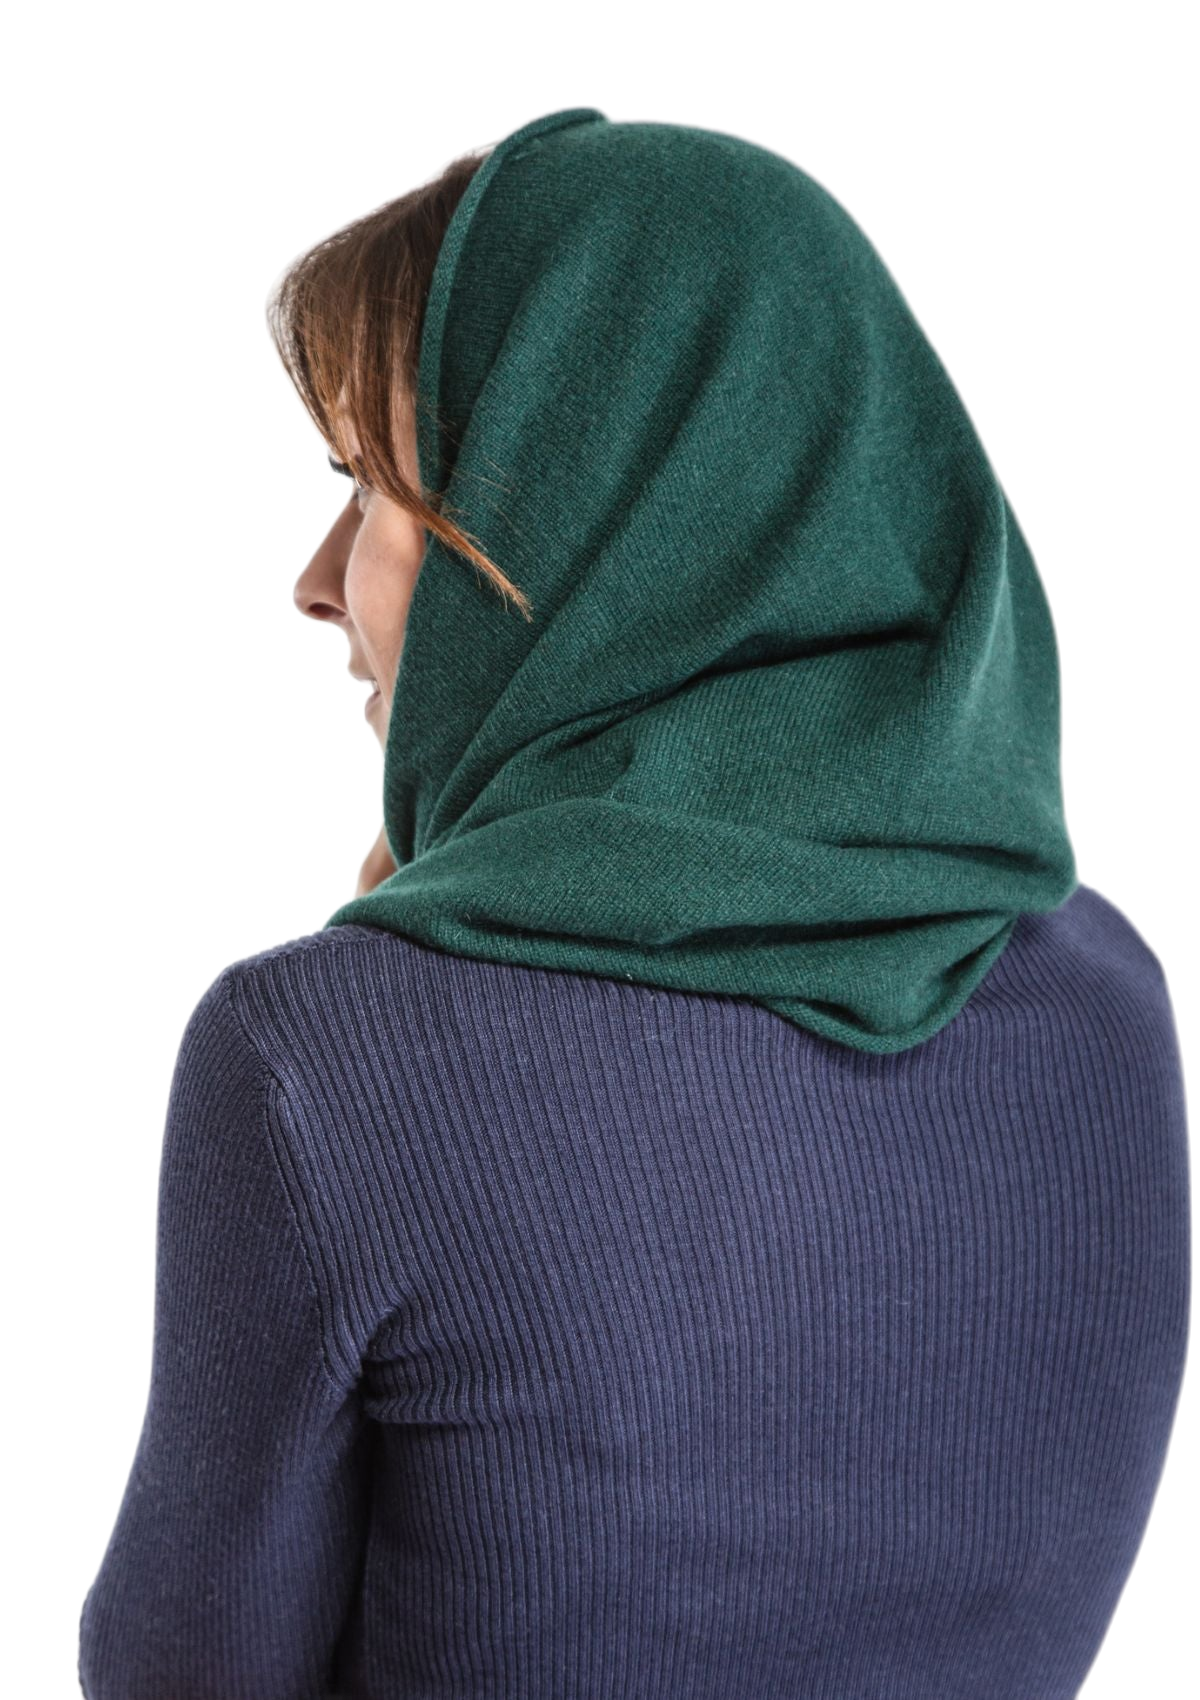 retro copricapo donna in cashmere verde